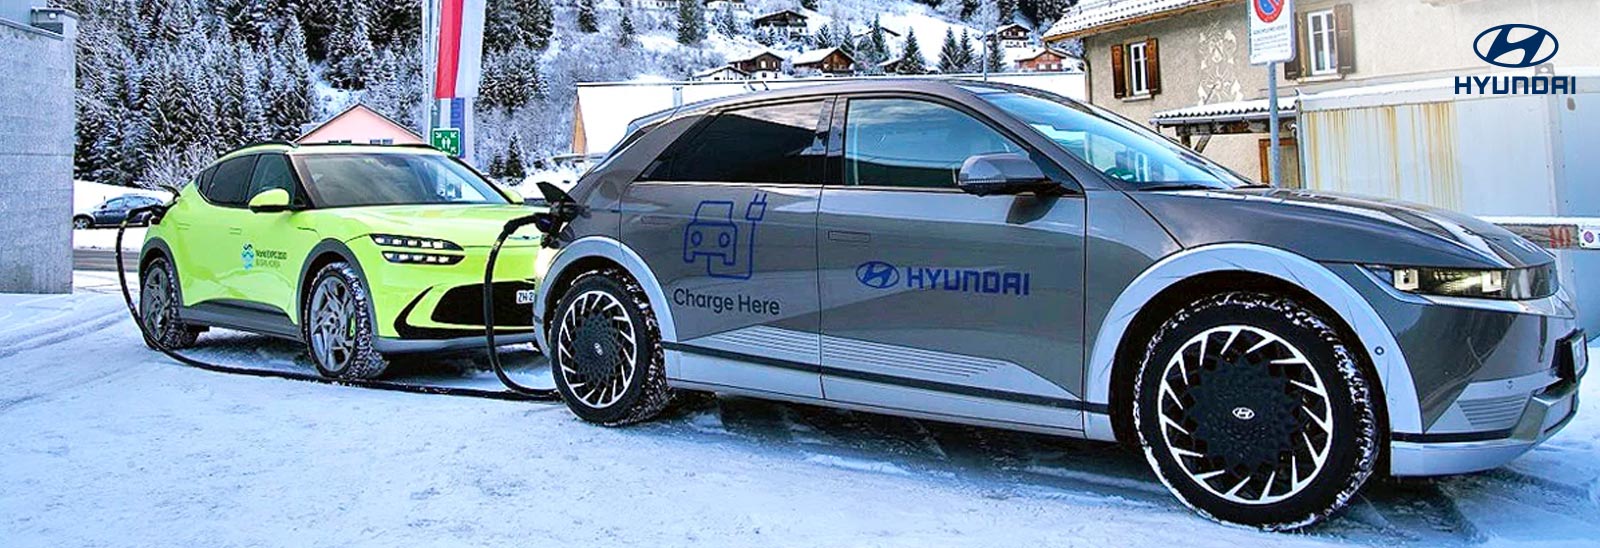 vehículos ecológicos de Hyundai en la nieve